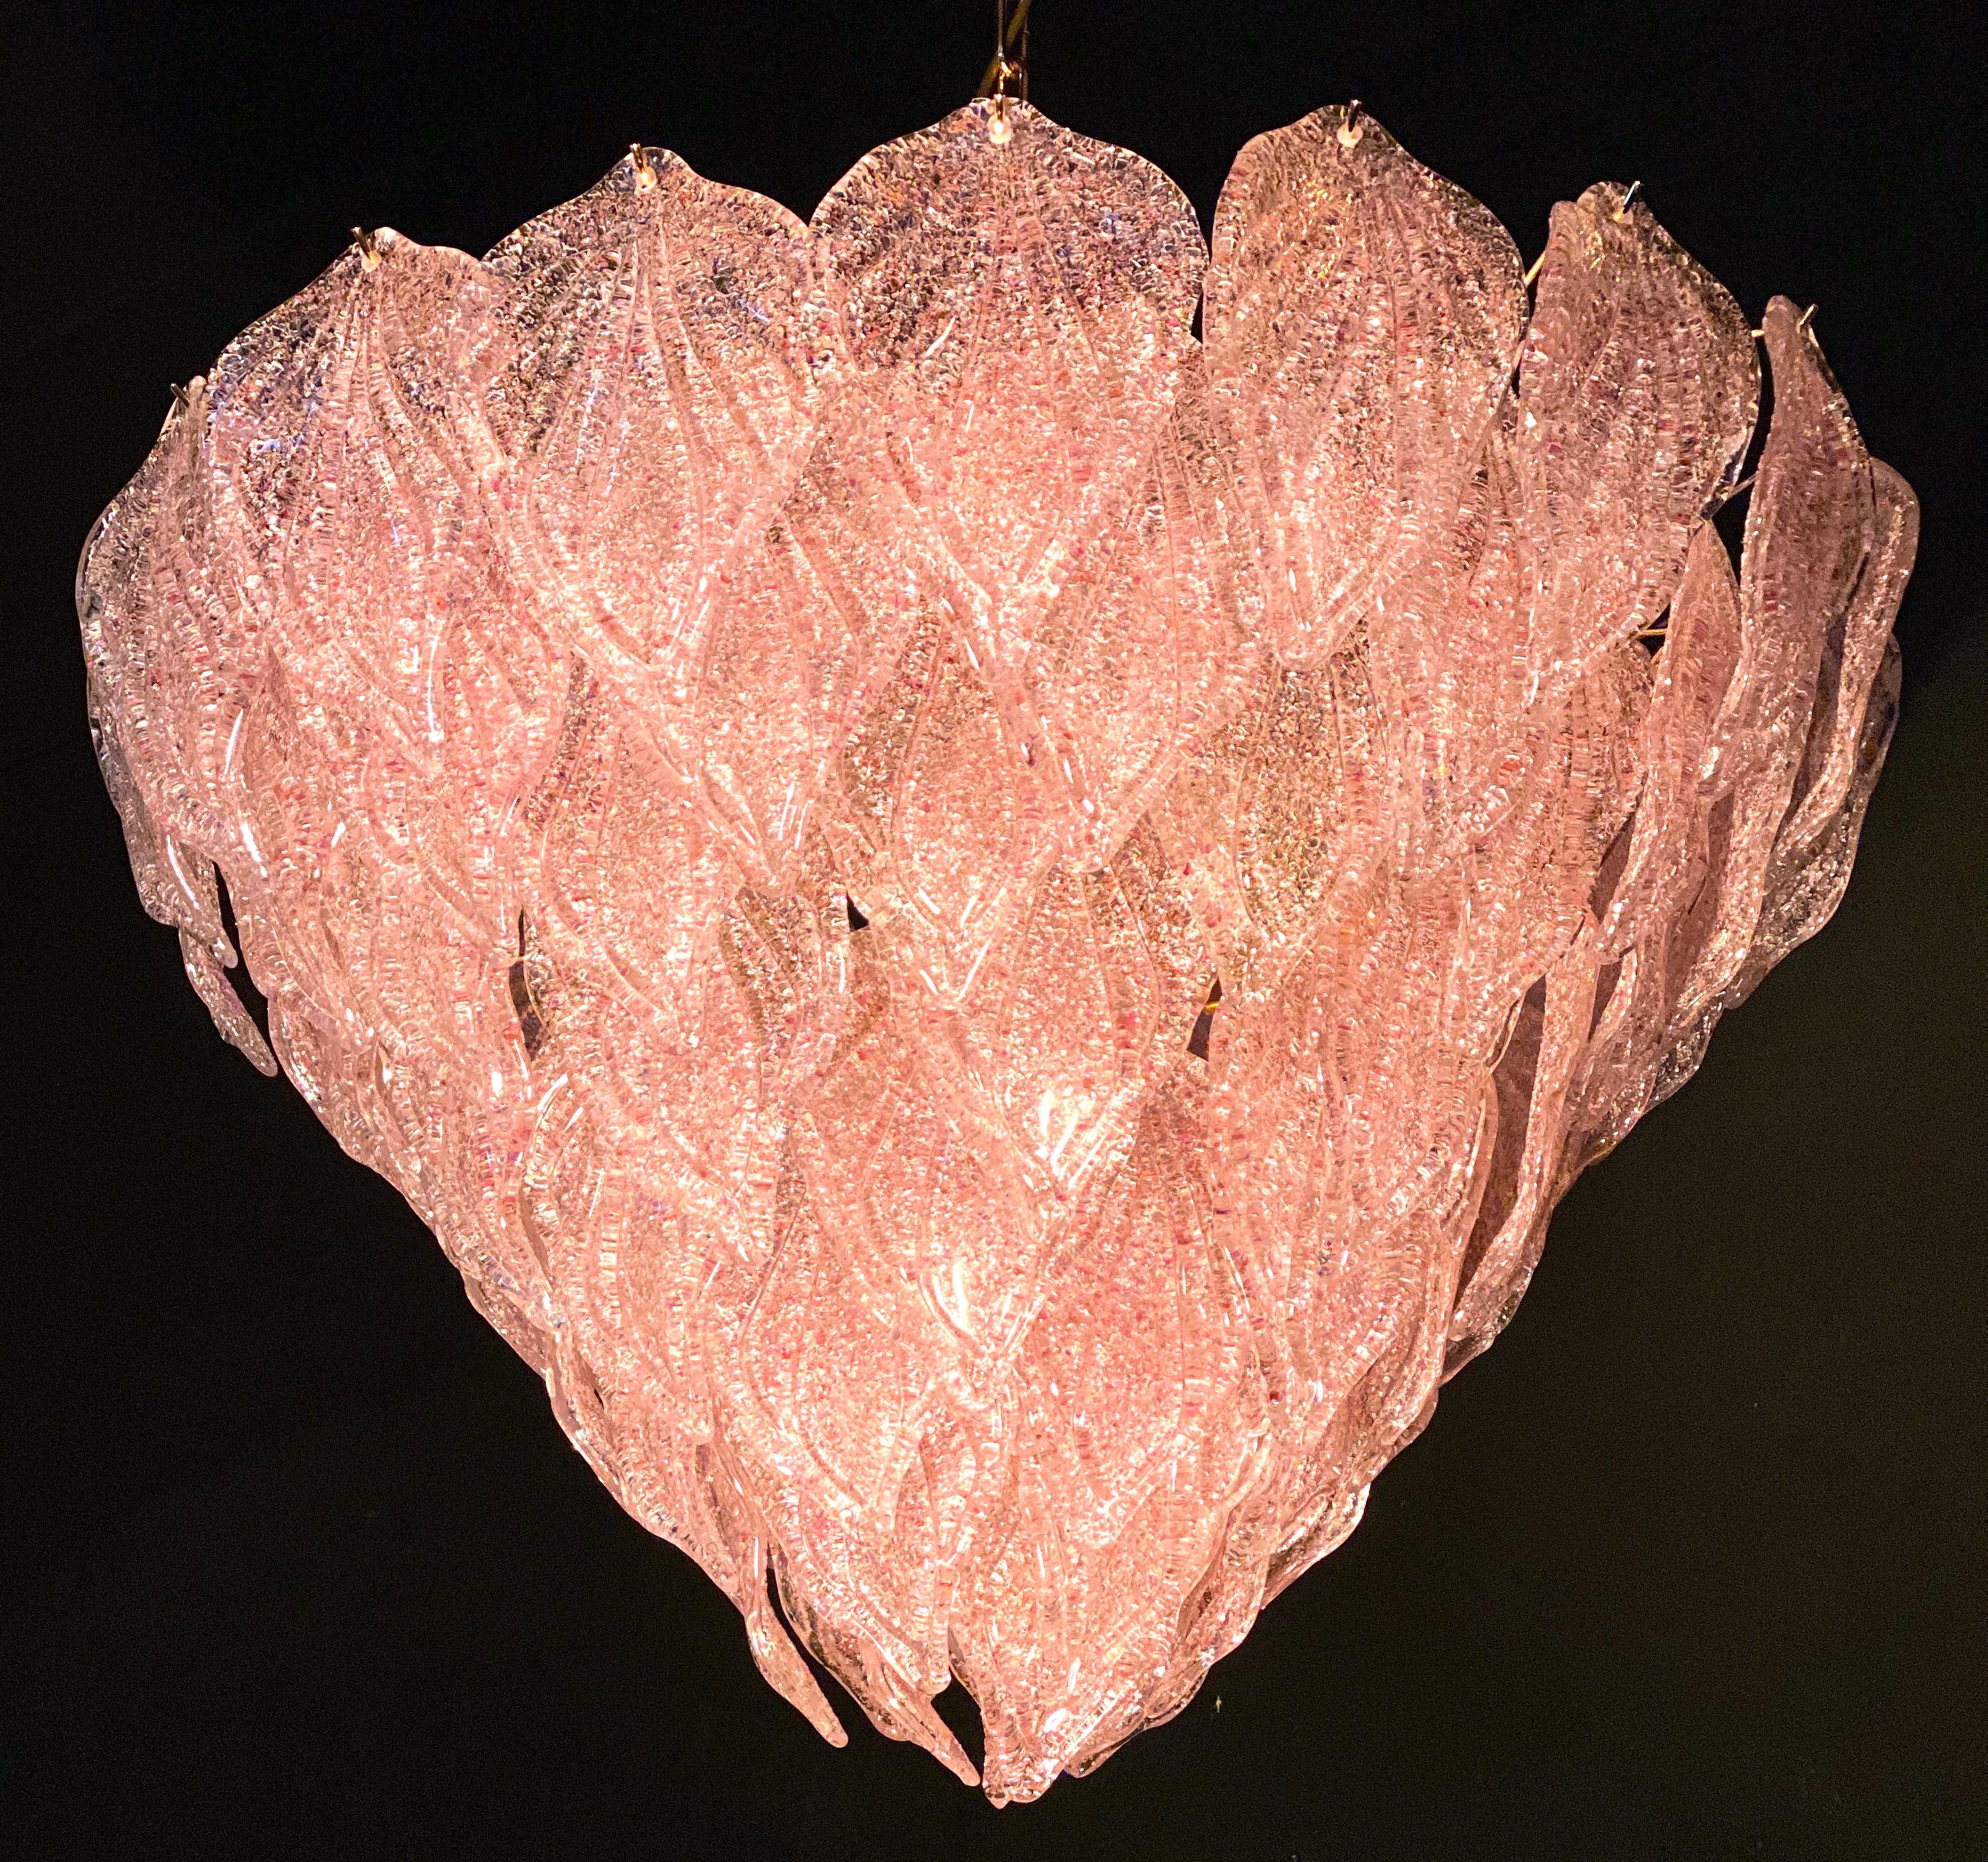 Lustre rose polaire de Murano, chacun avec 88 précieuses feuilles de verre soufflées à la main, suspendues au cadre en laiton. Effet de lumière spectaculaire.
Disponible également une paire et quatre paires d'appliques.

Mesures : Hauteur 75 cm,